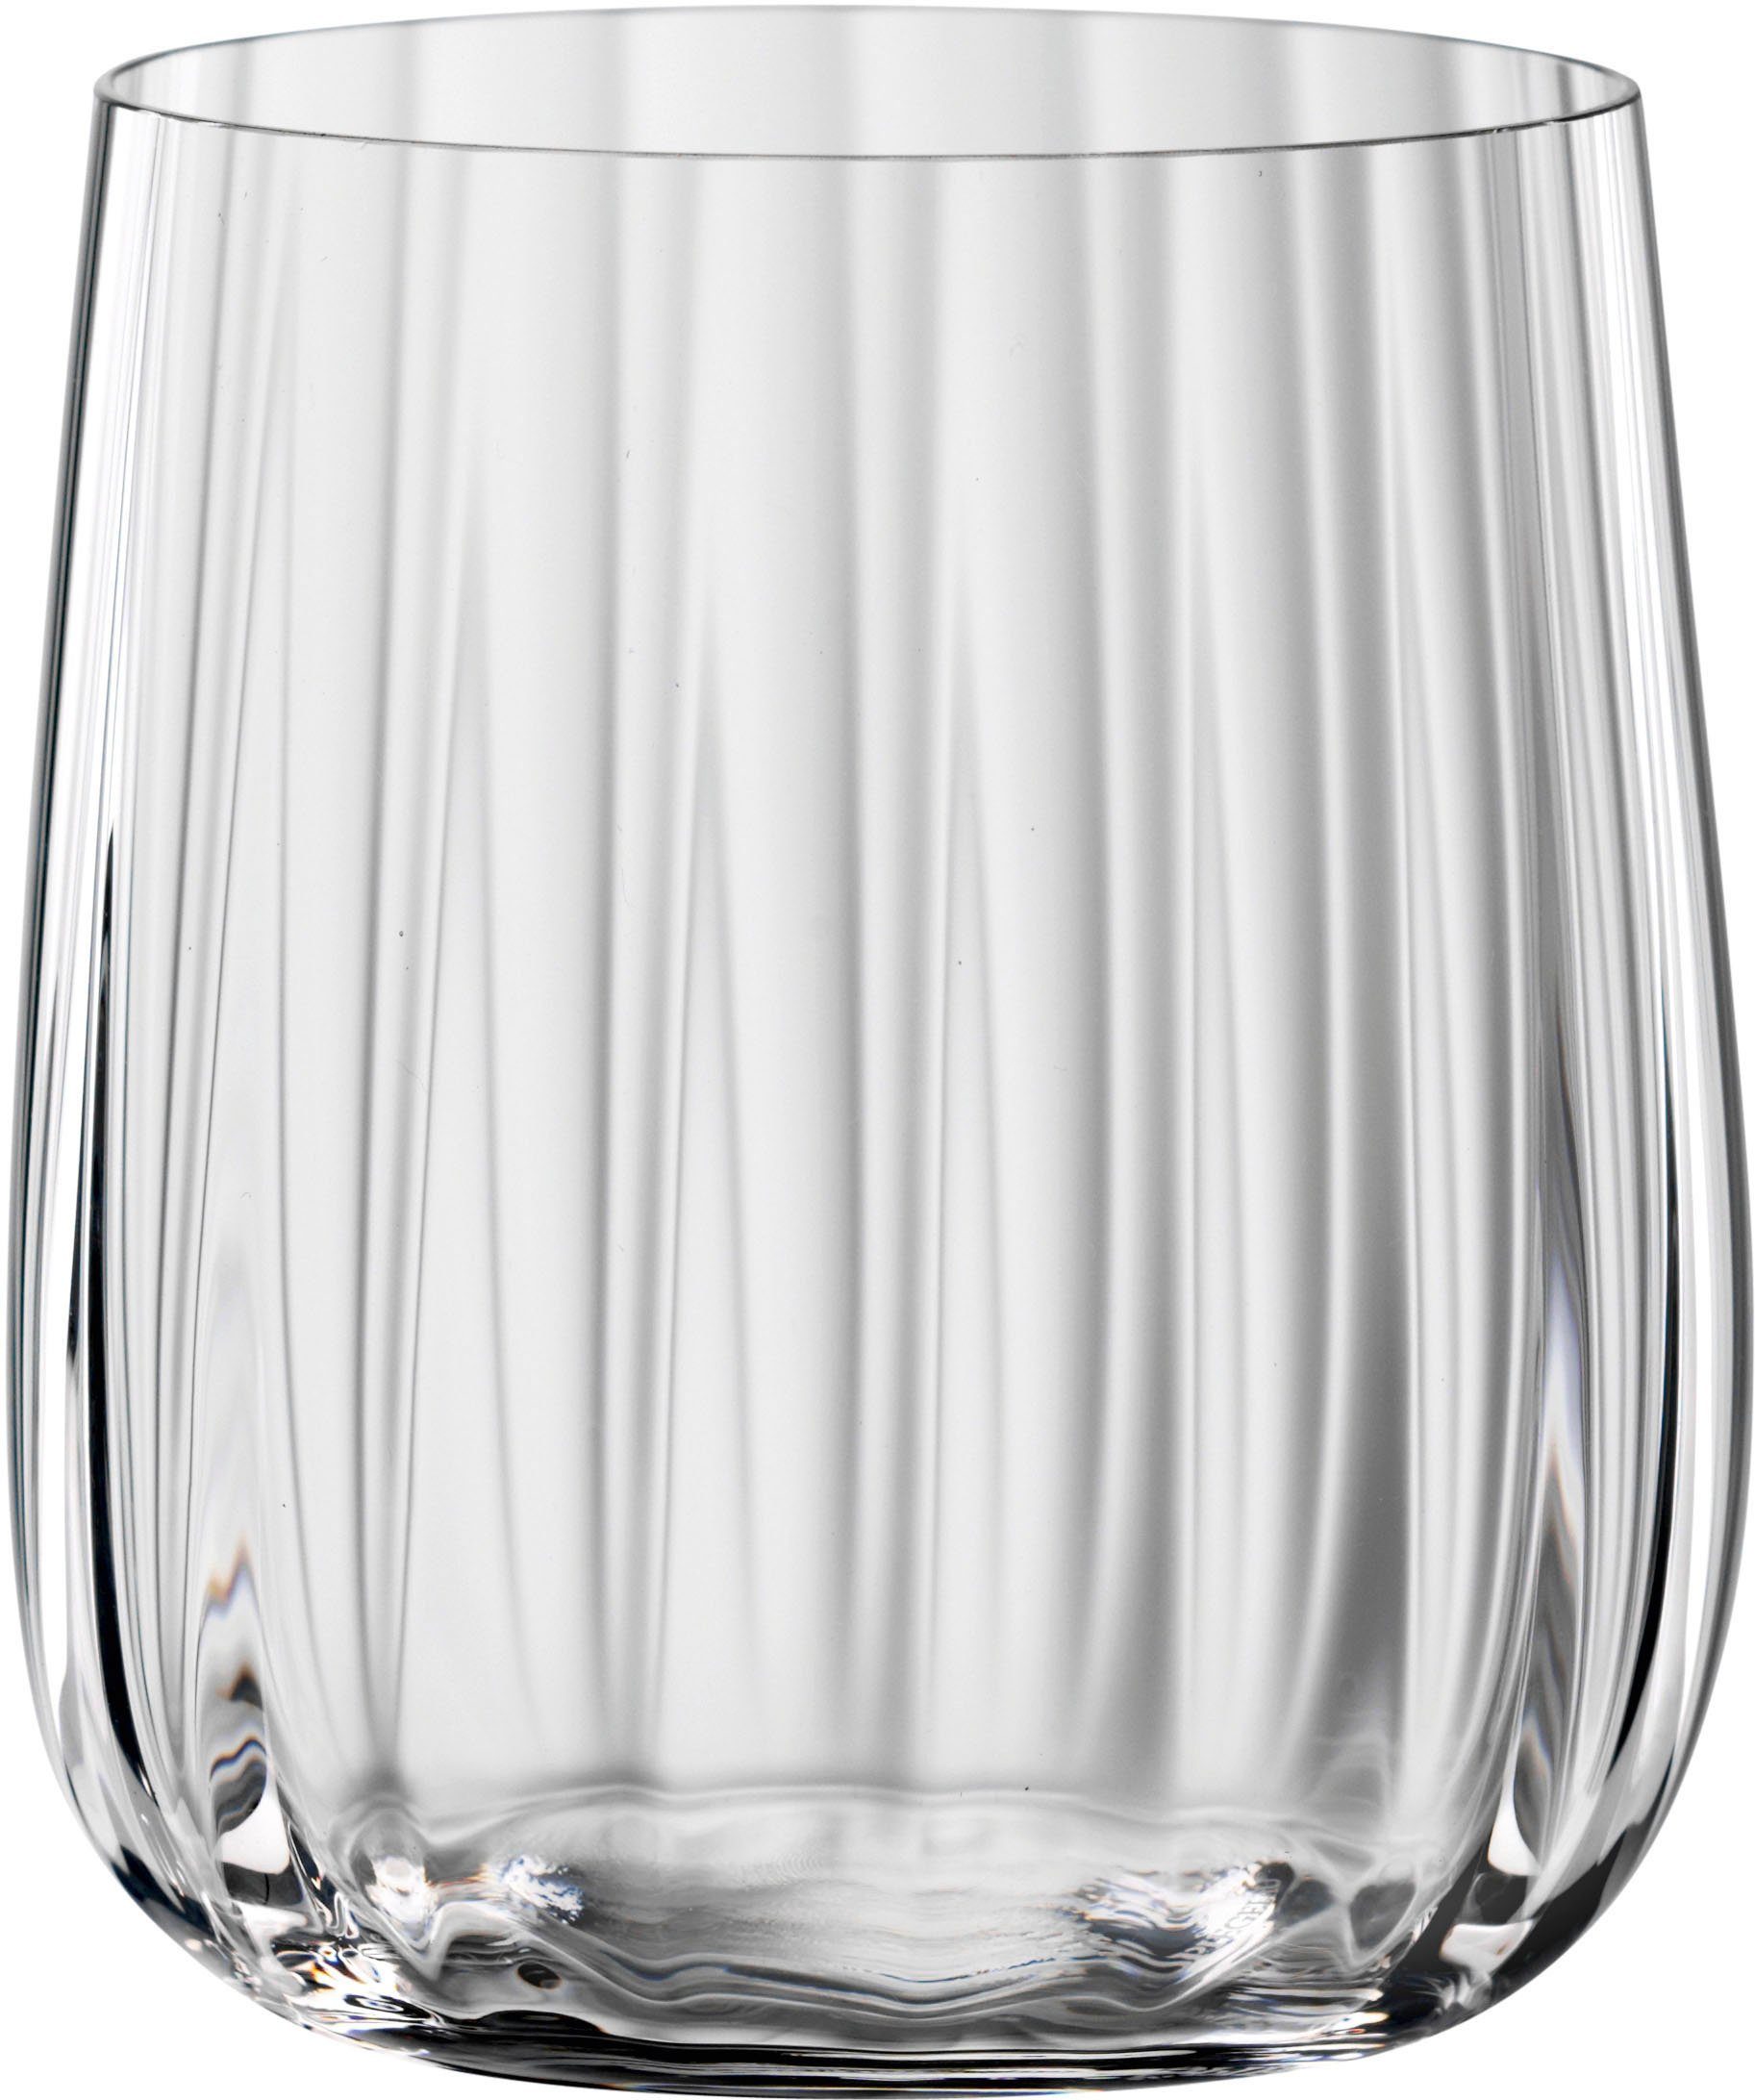 SPIEGELAU Becher LifeStyle, Kristallglas, 340 ml, 4-teilig